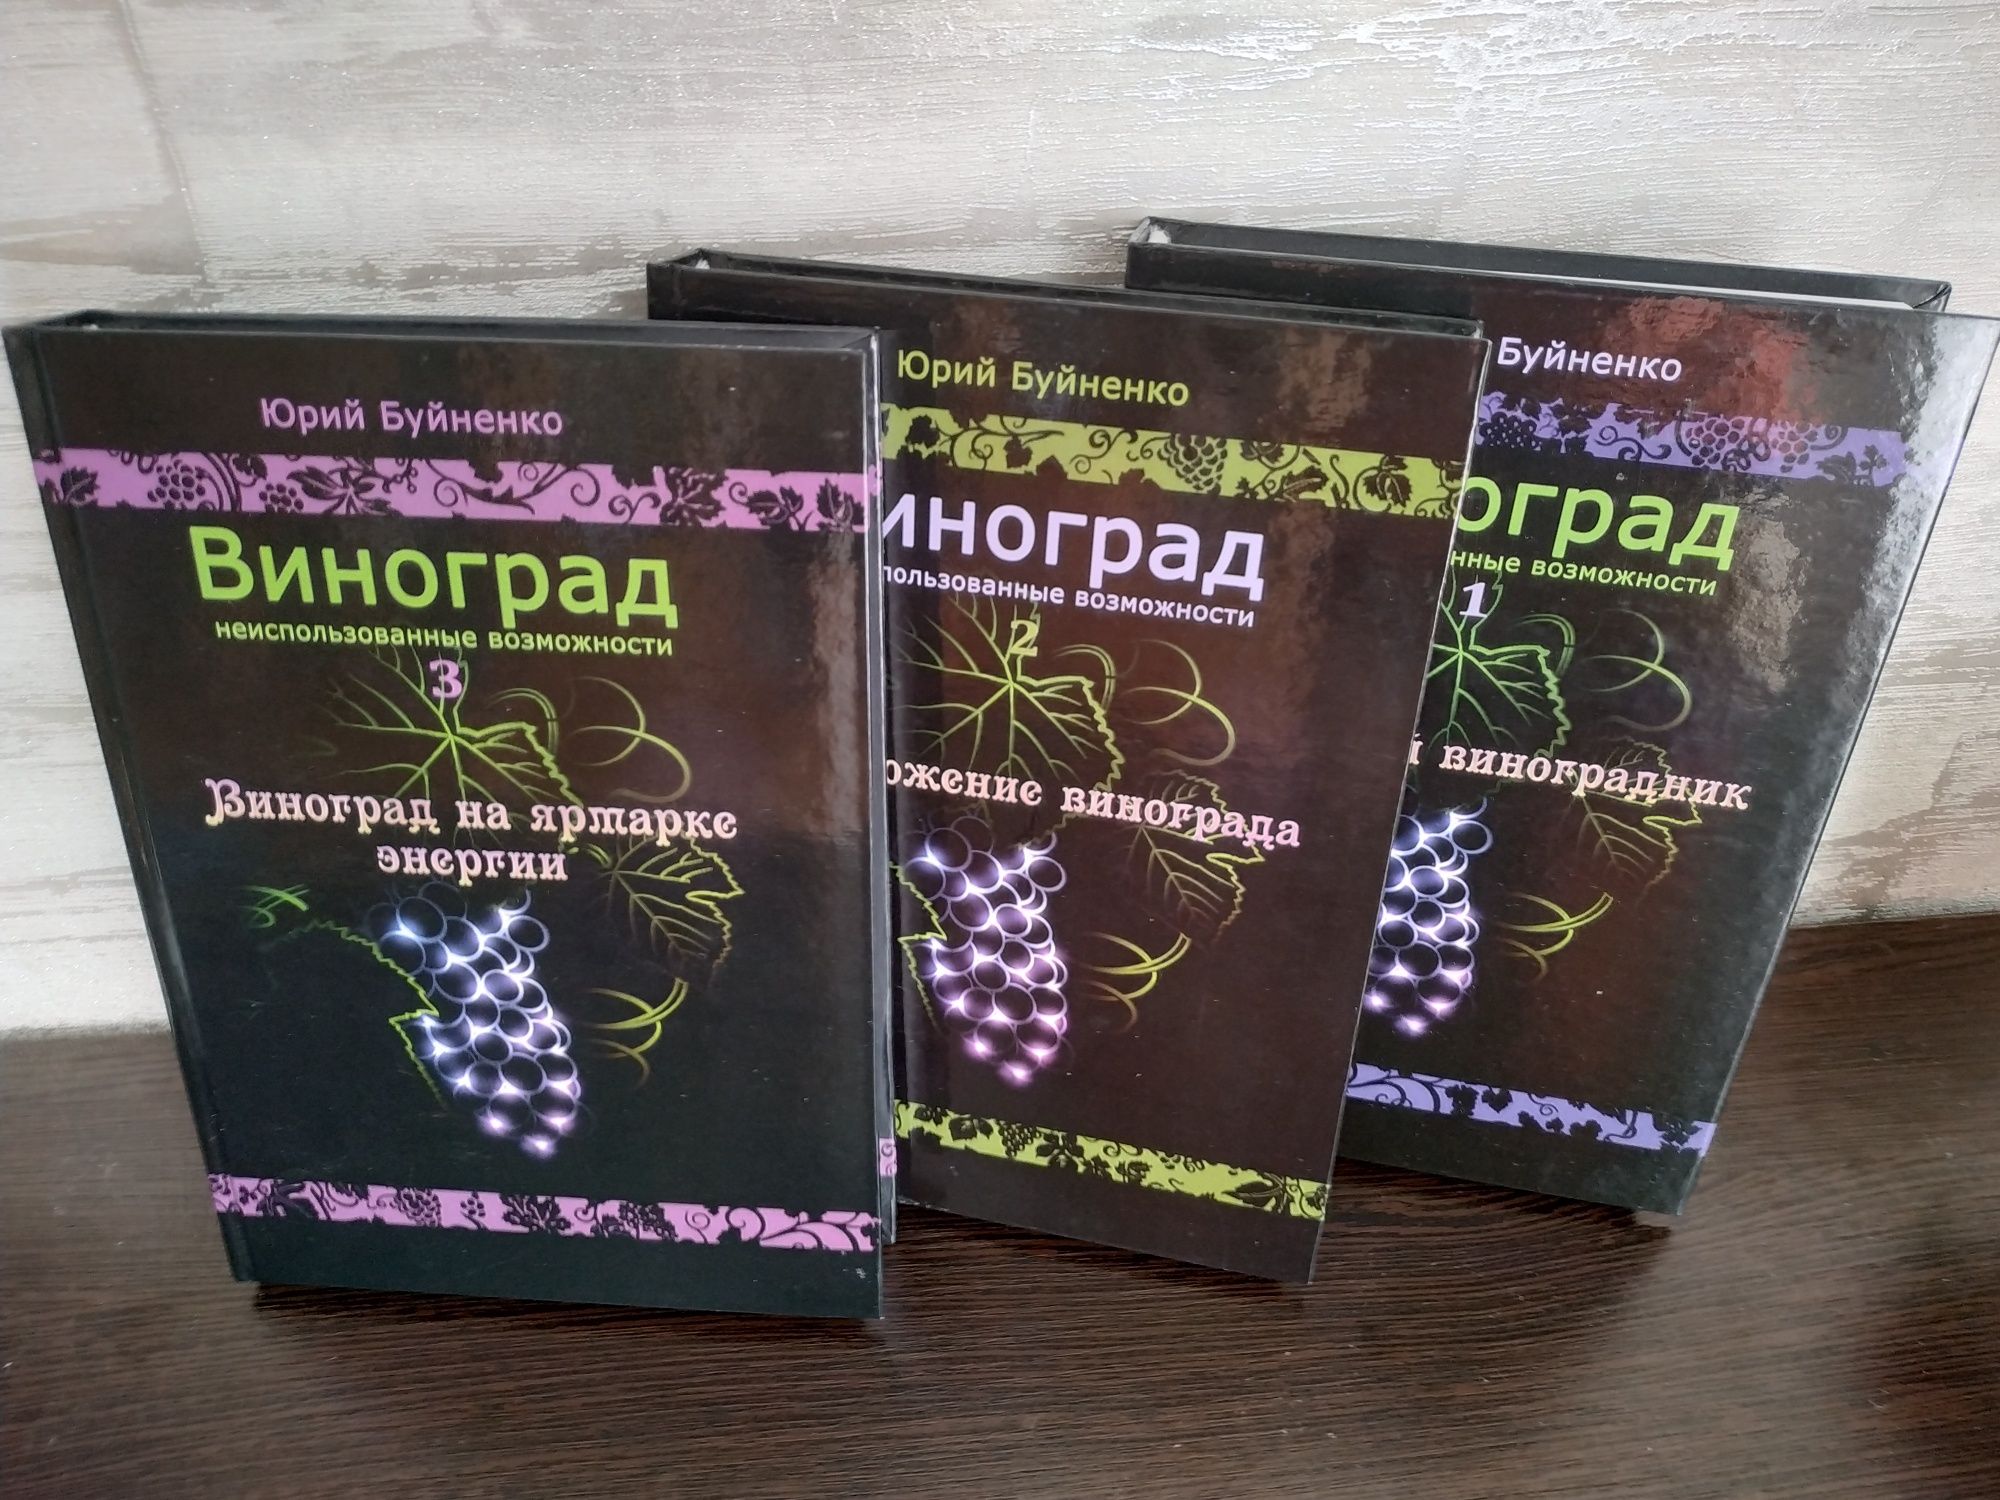 "Виноград, неиспользованные возможности" в трёх томах